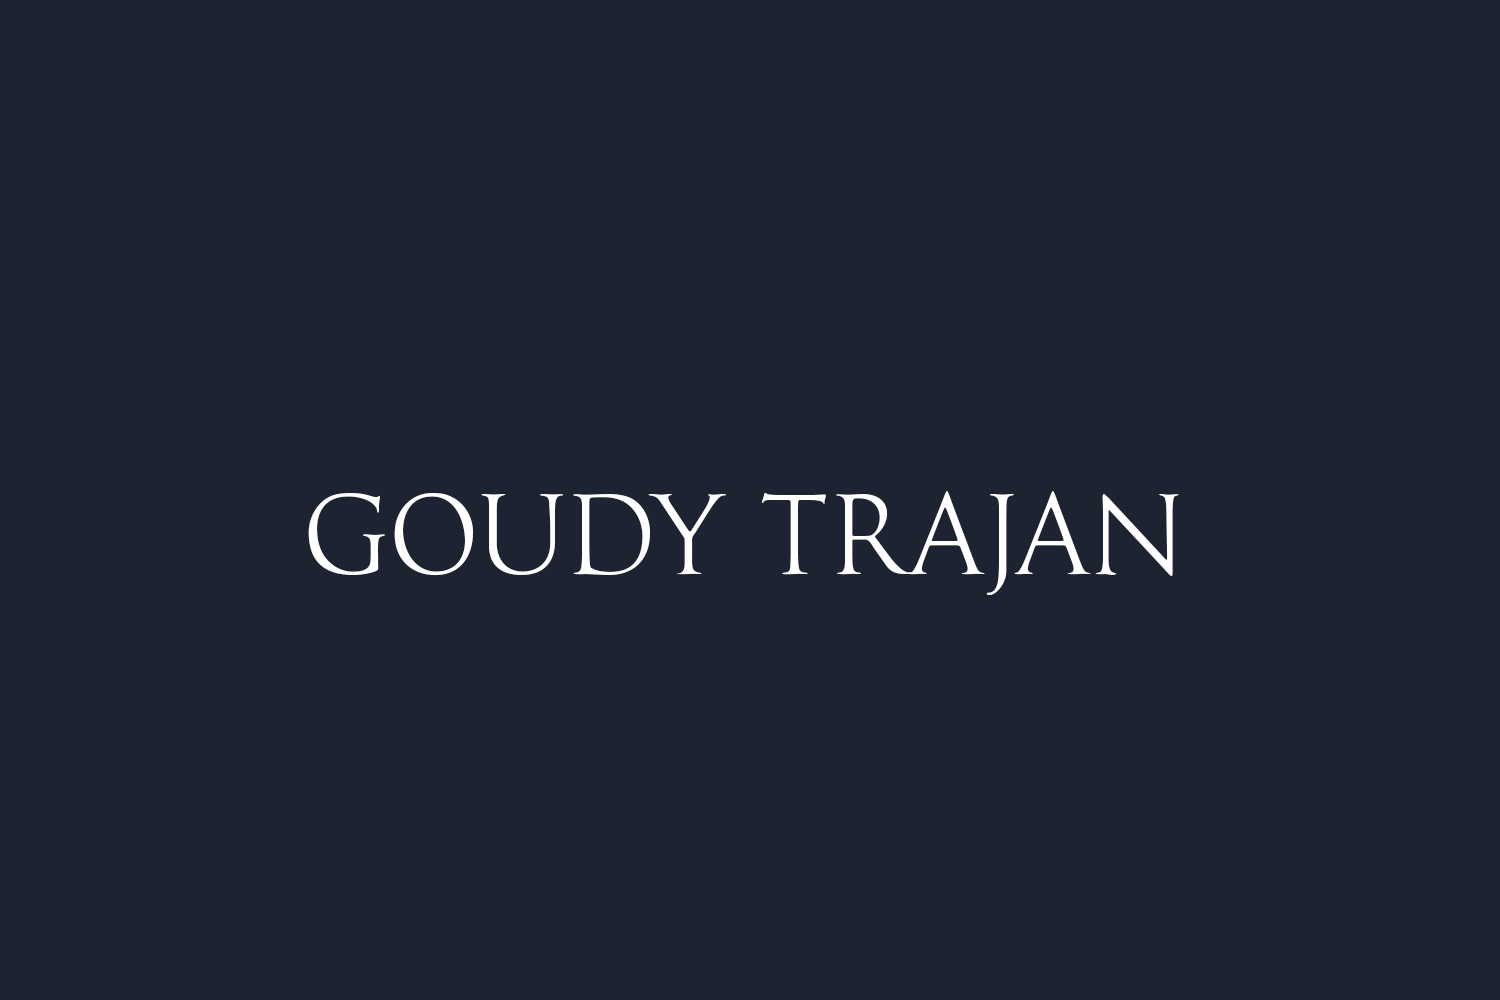 Goudy Trajan